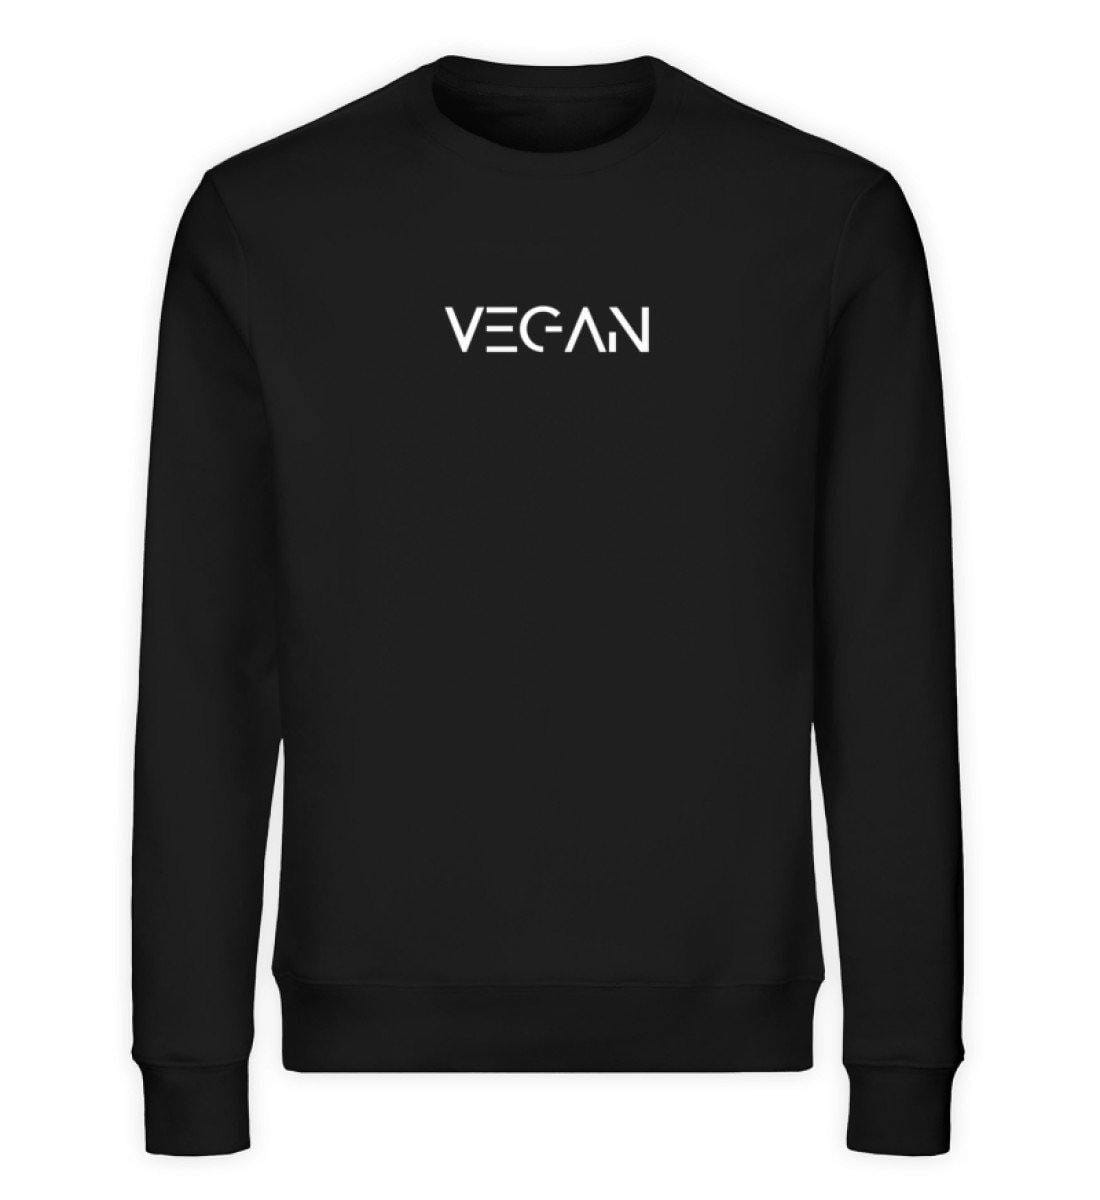 V E G A N - Unisex Organic Sweatshirt - M